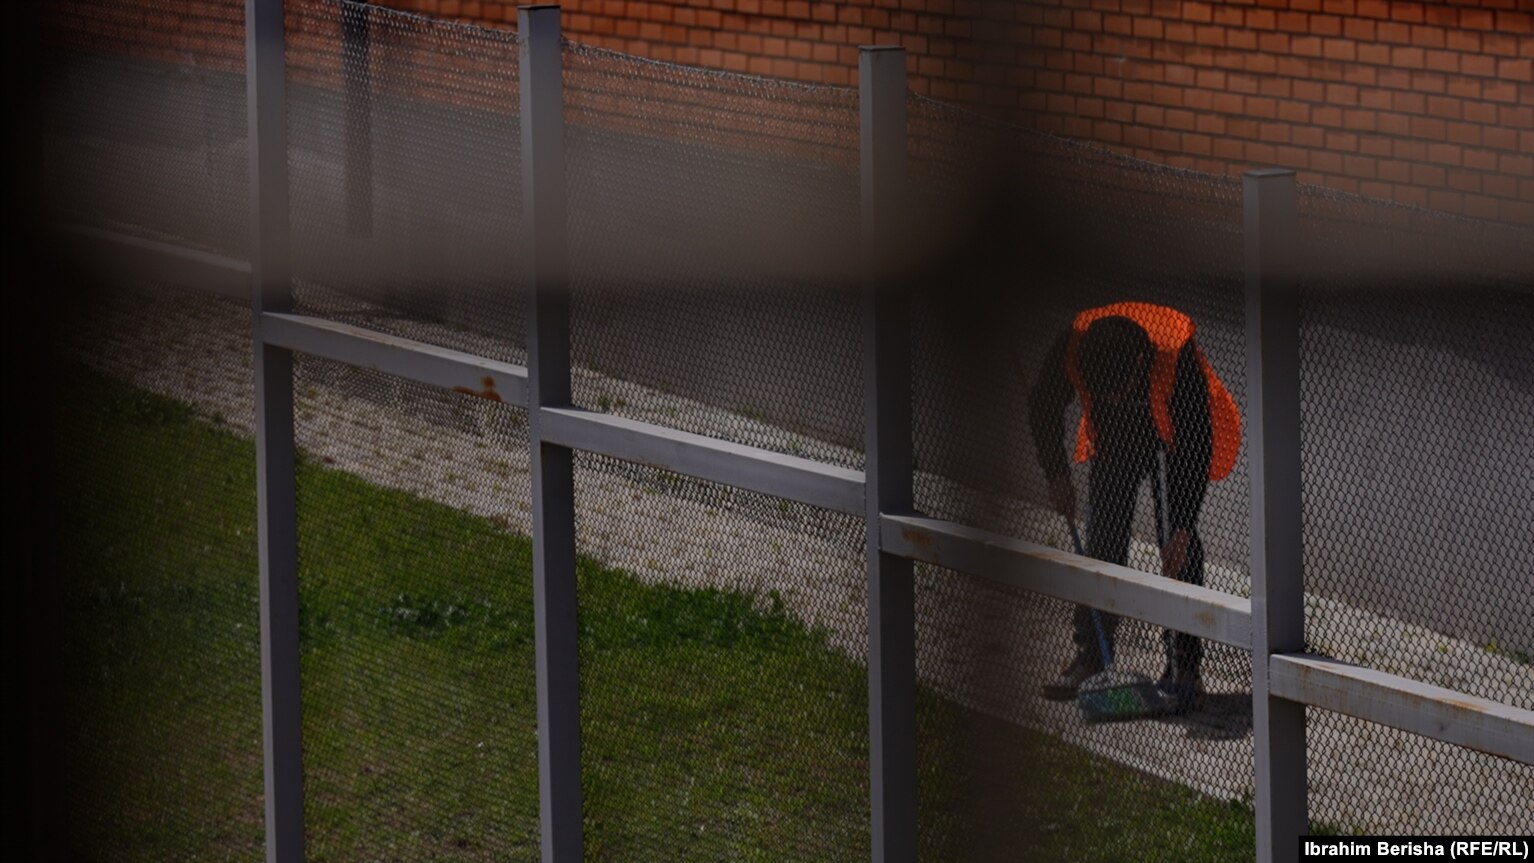 Një i burgosur duke fshirë oborrin në Qendrën e Paraburgimit në rajonin e Gjilanit.